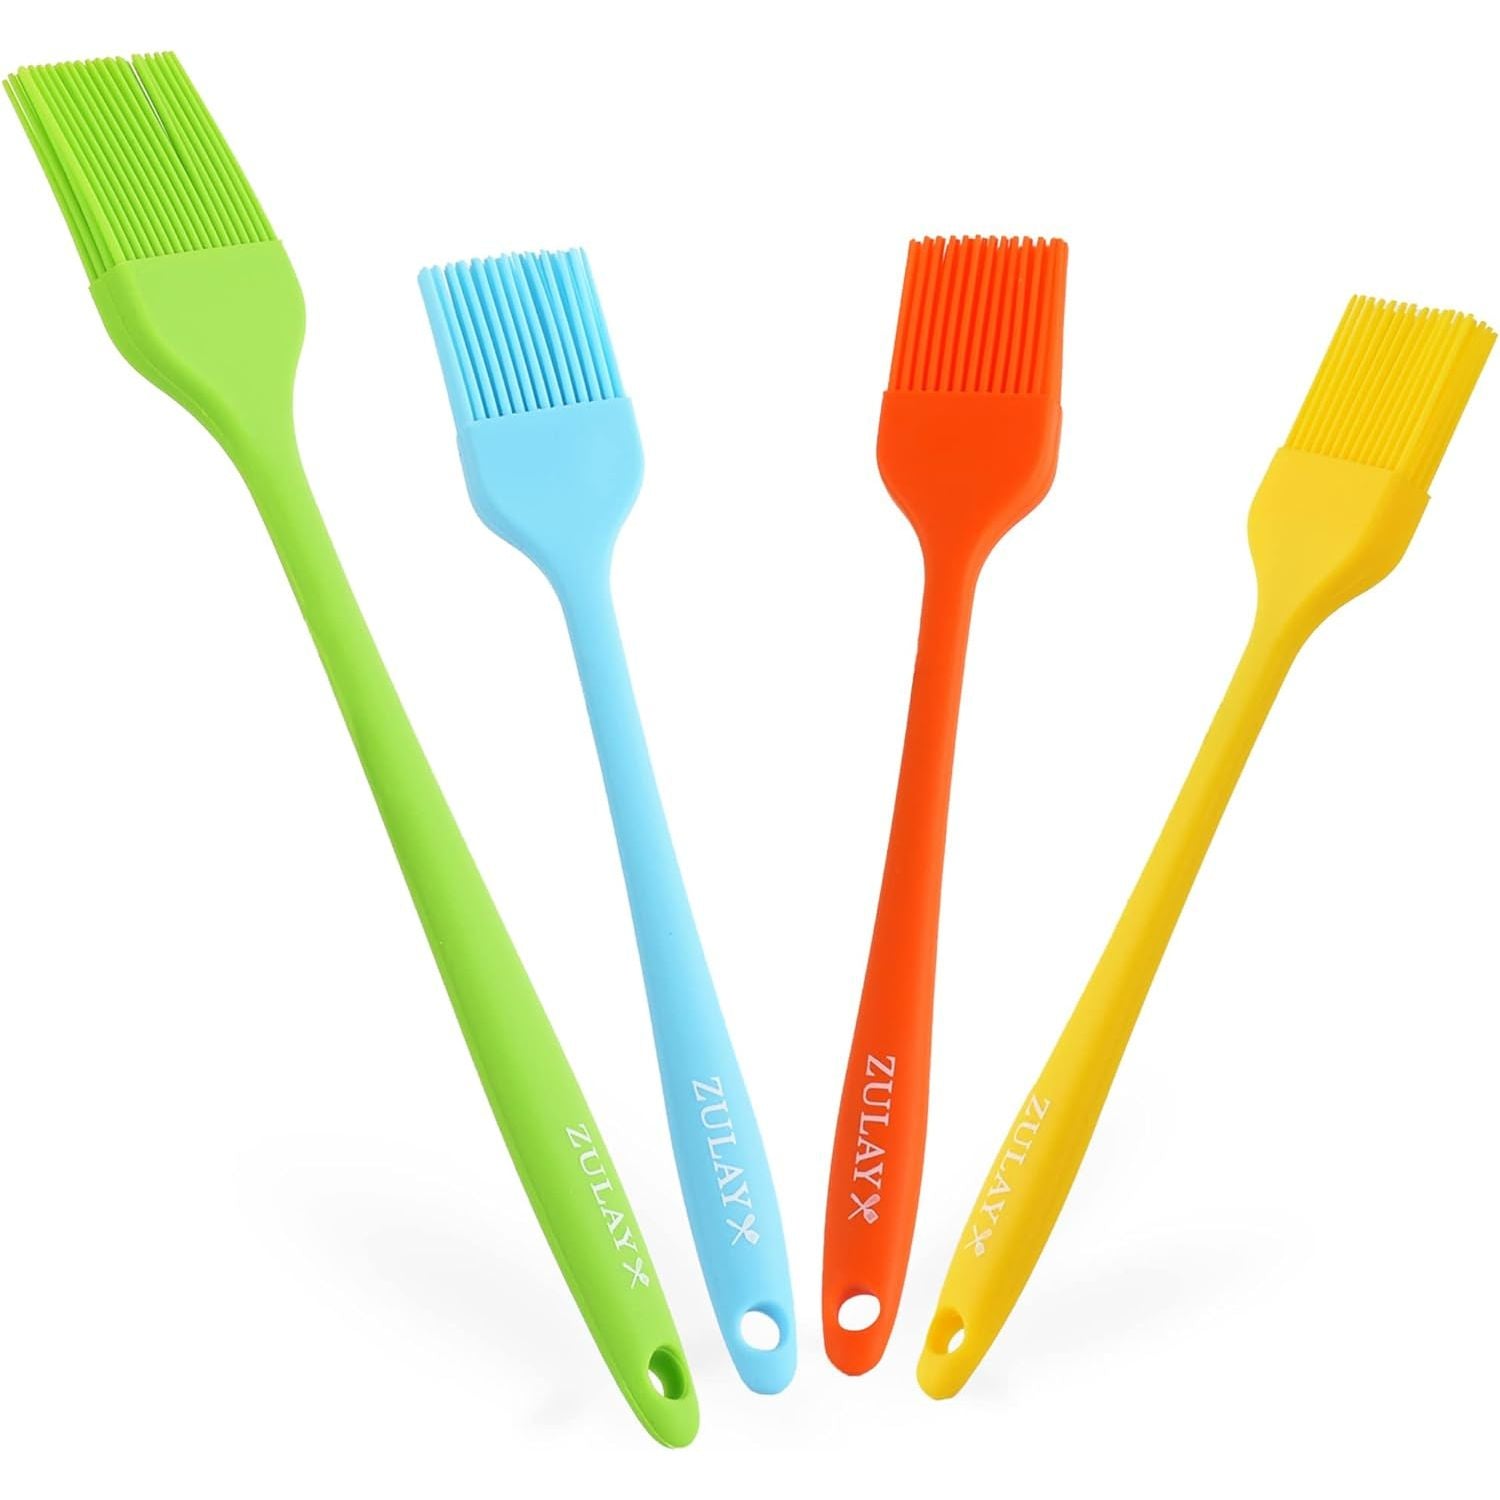 Food Network™ Reversible Basting Brush